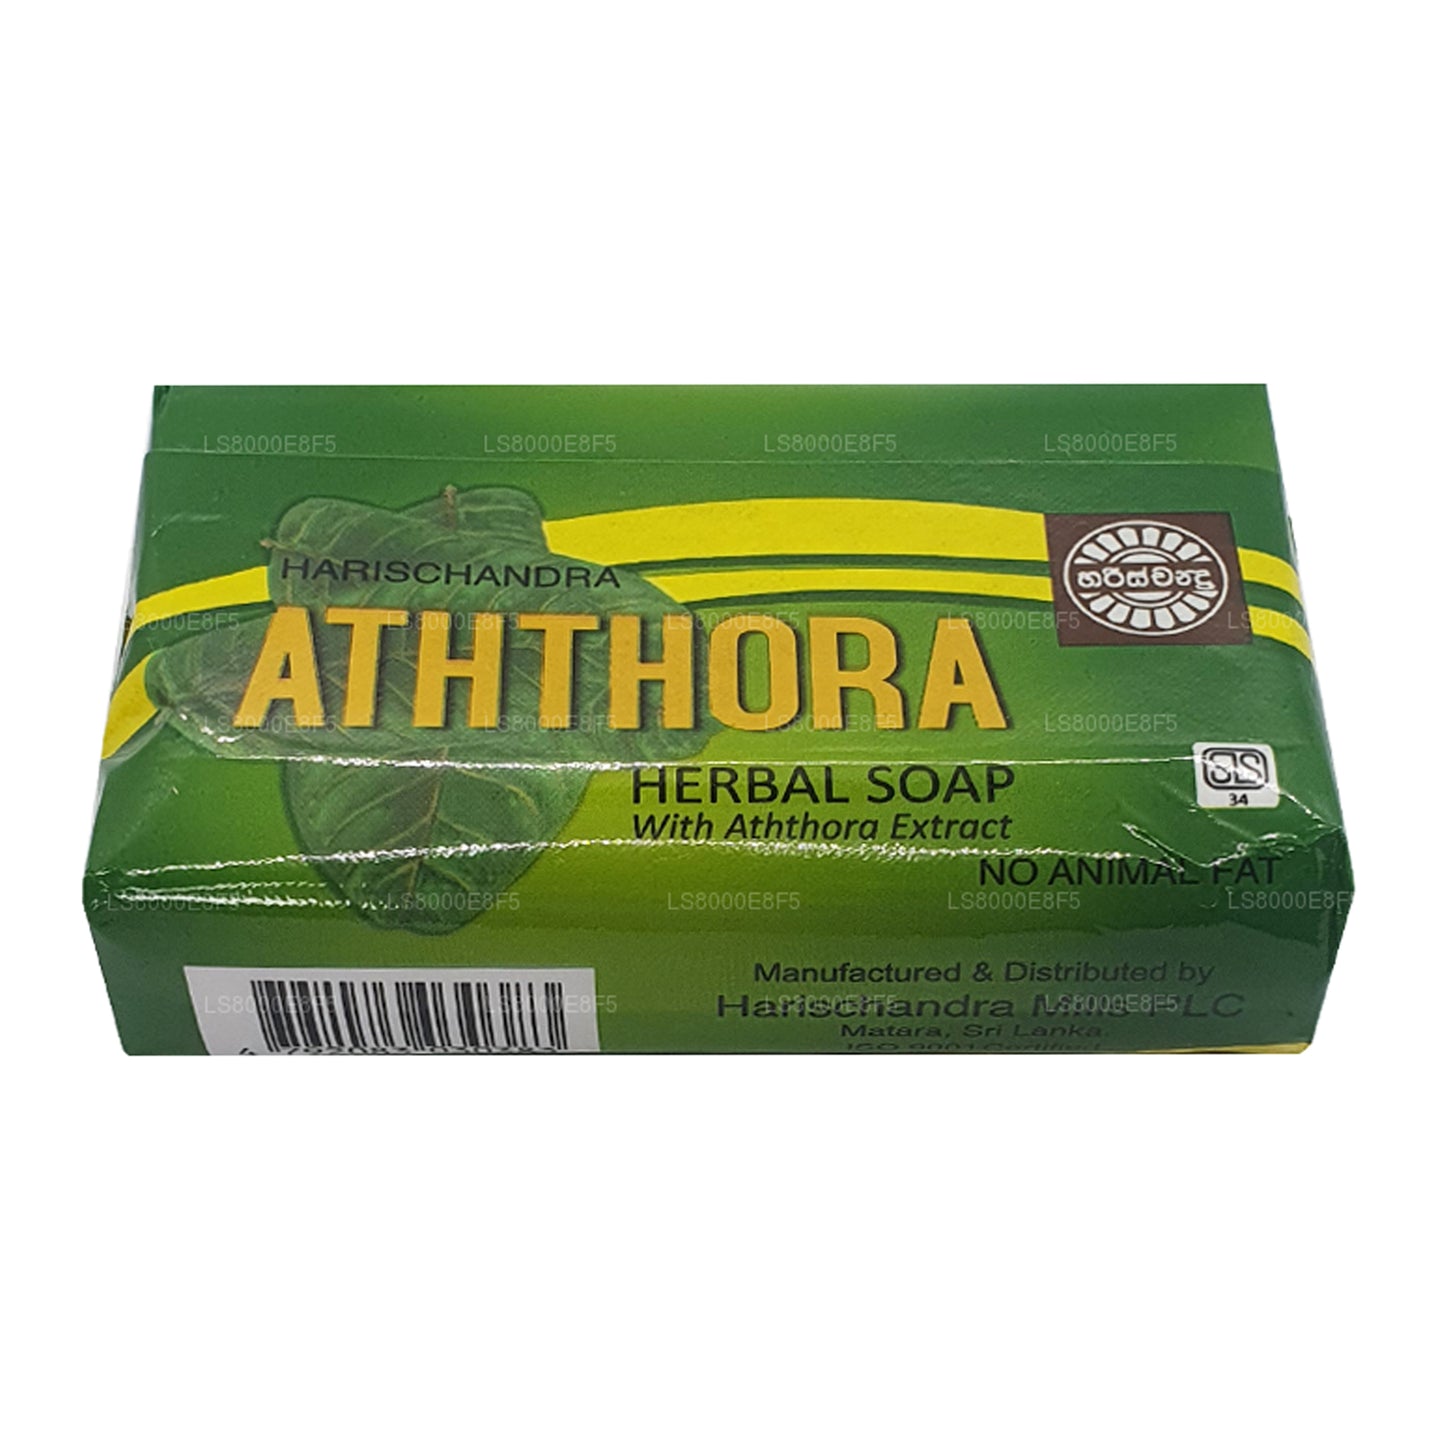 Harischandra Aththora 肥皂 (70g)